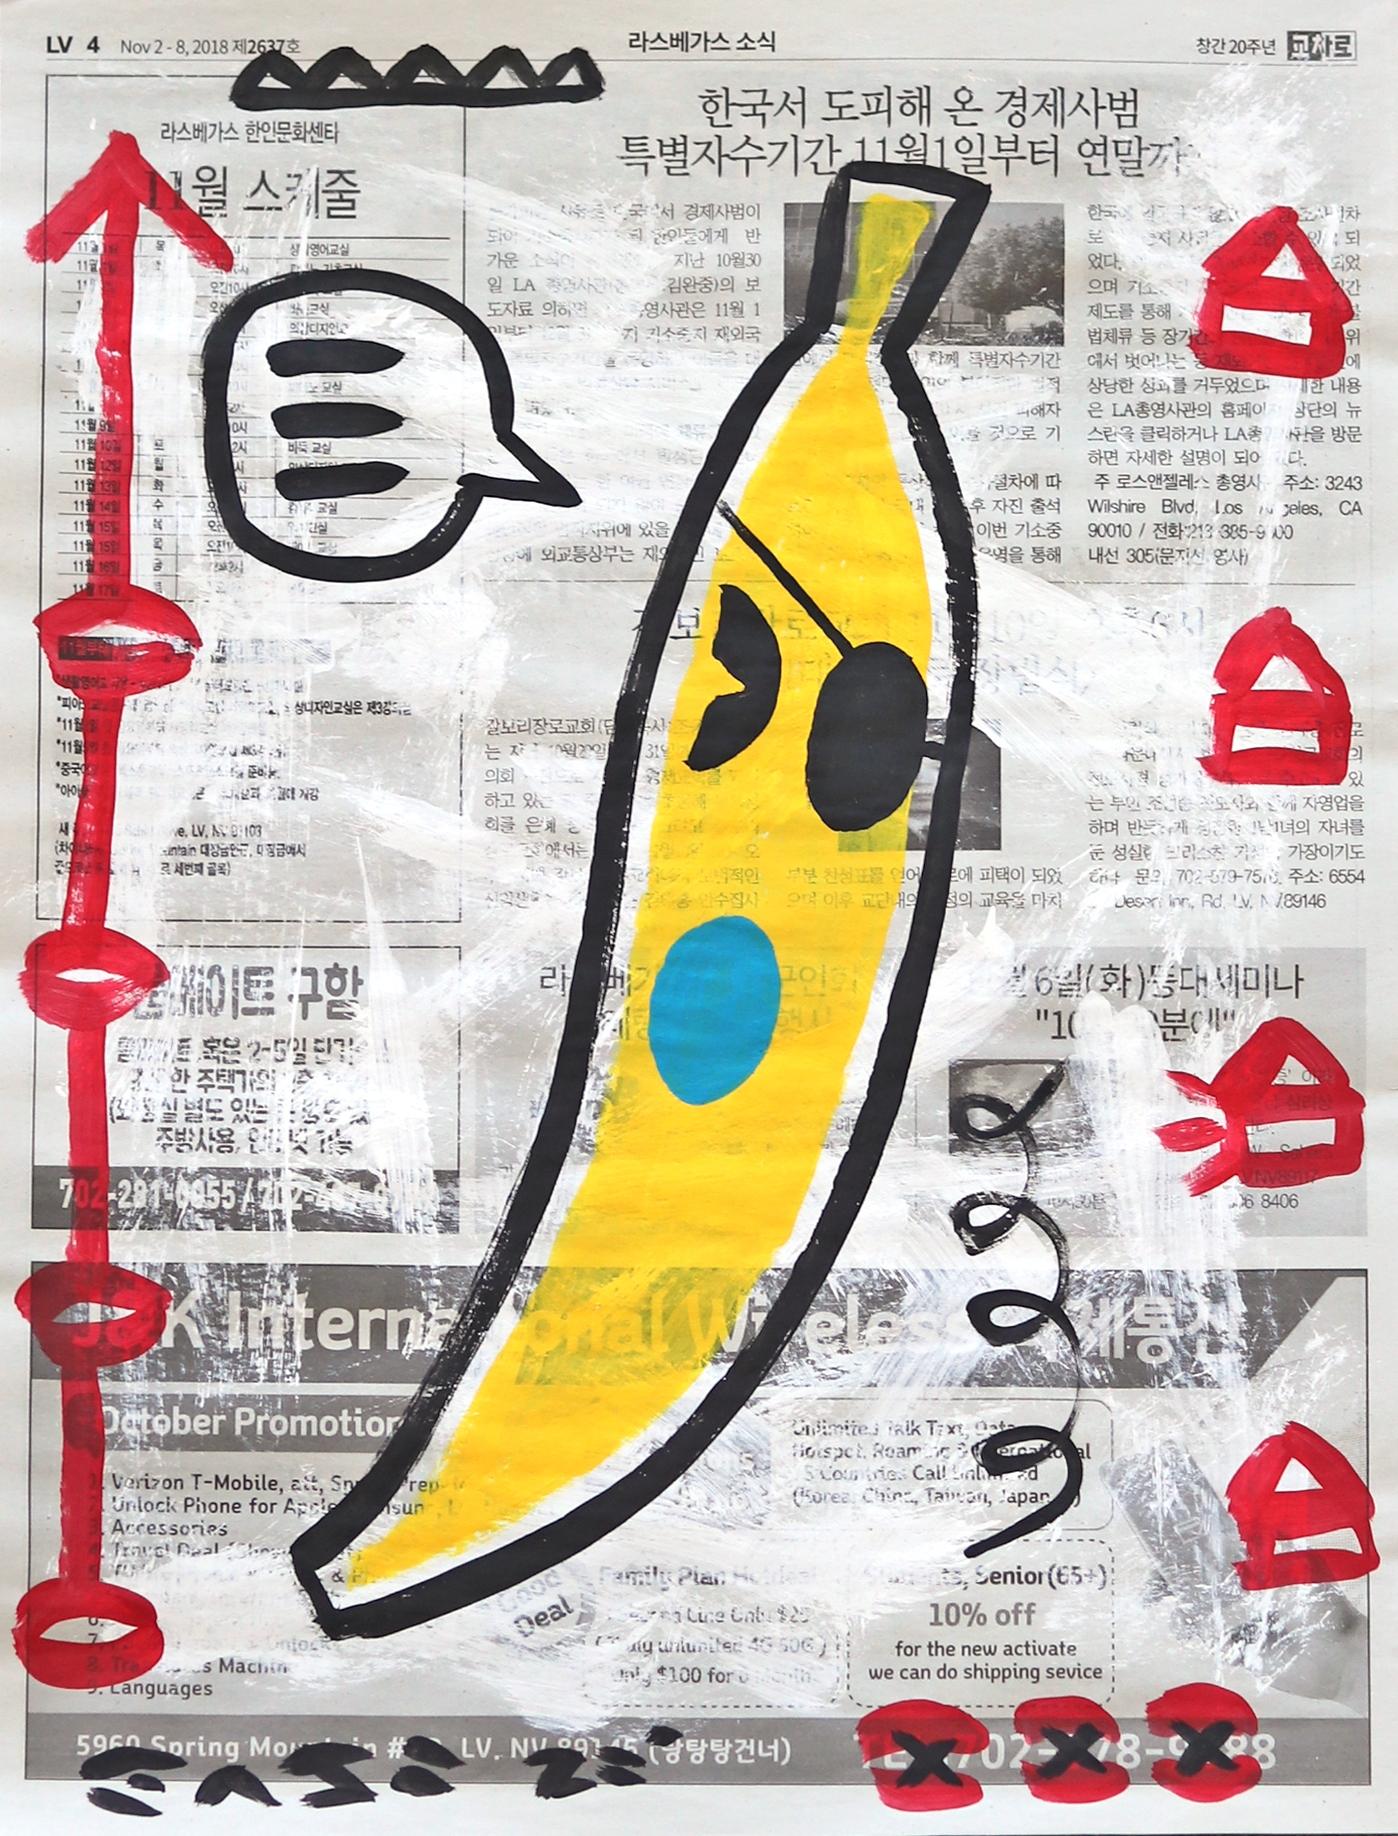 Banana Banter - Mixed Media Art by Gary John